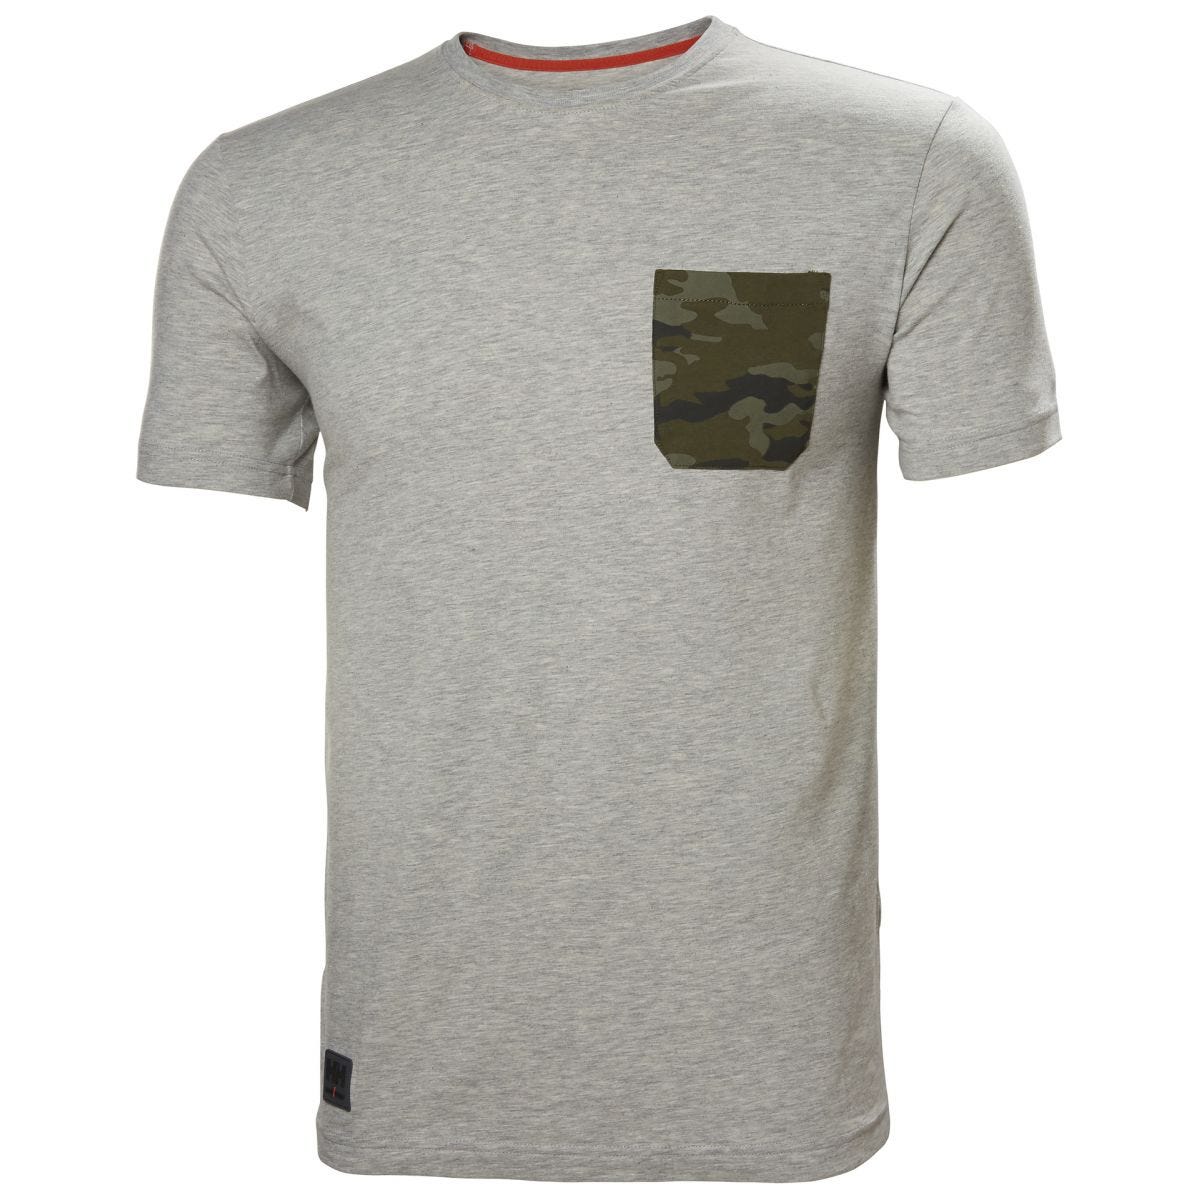 Tee-shirt Kensington Gris/Camo - Helly Hansen - Taille XL 0